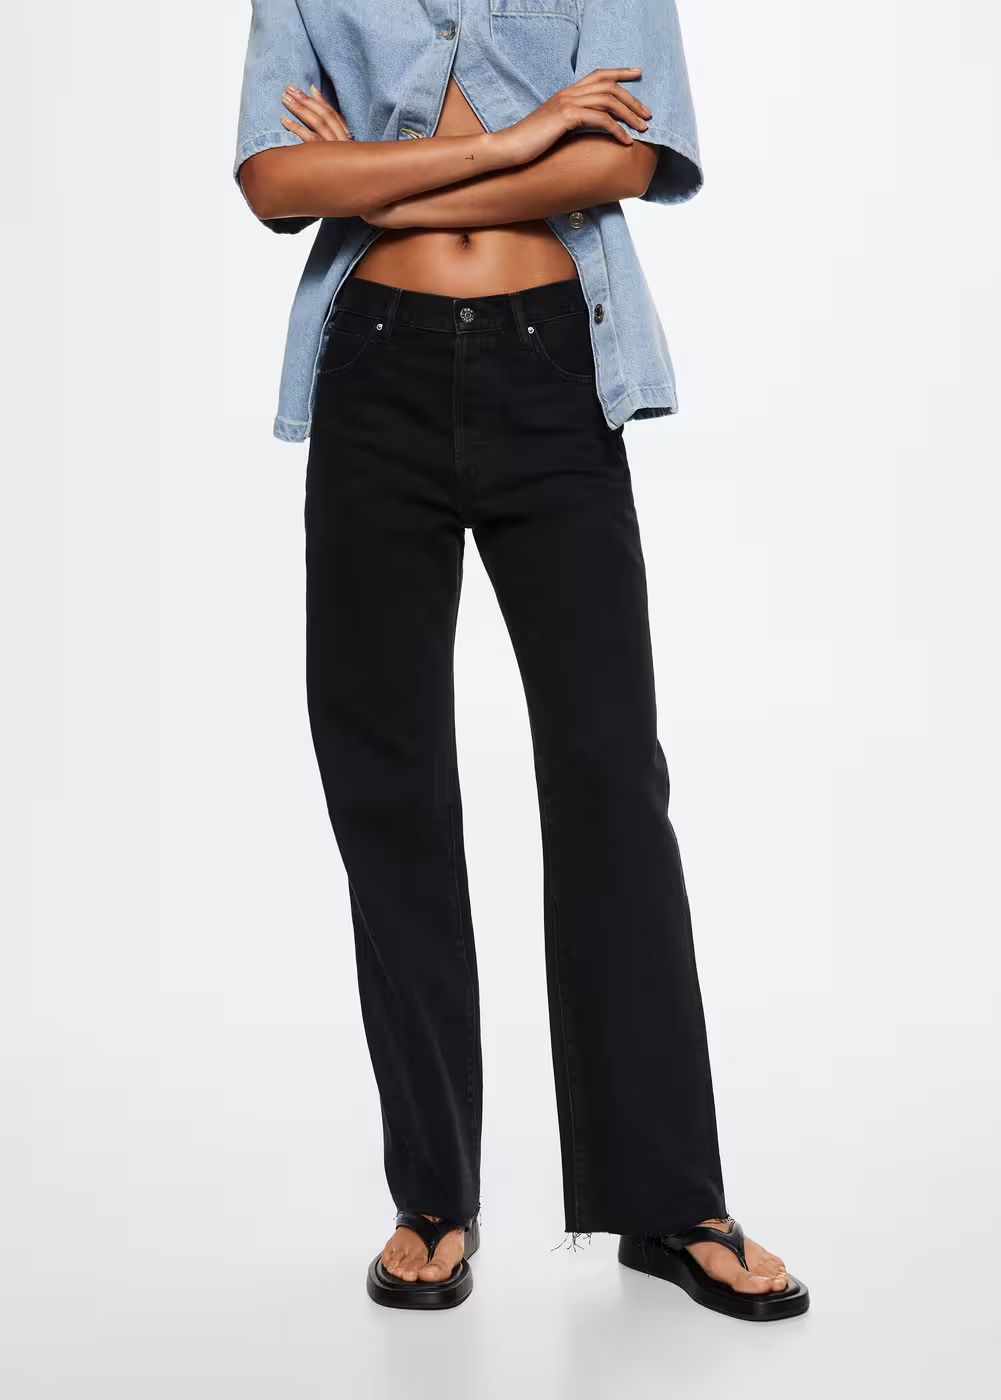 Wideleg-Jeans mit hohem Bund | MANGO (DE)